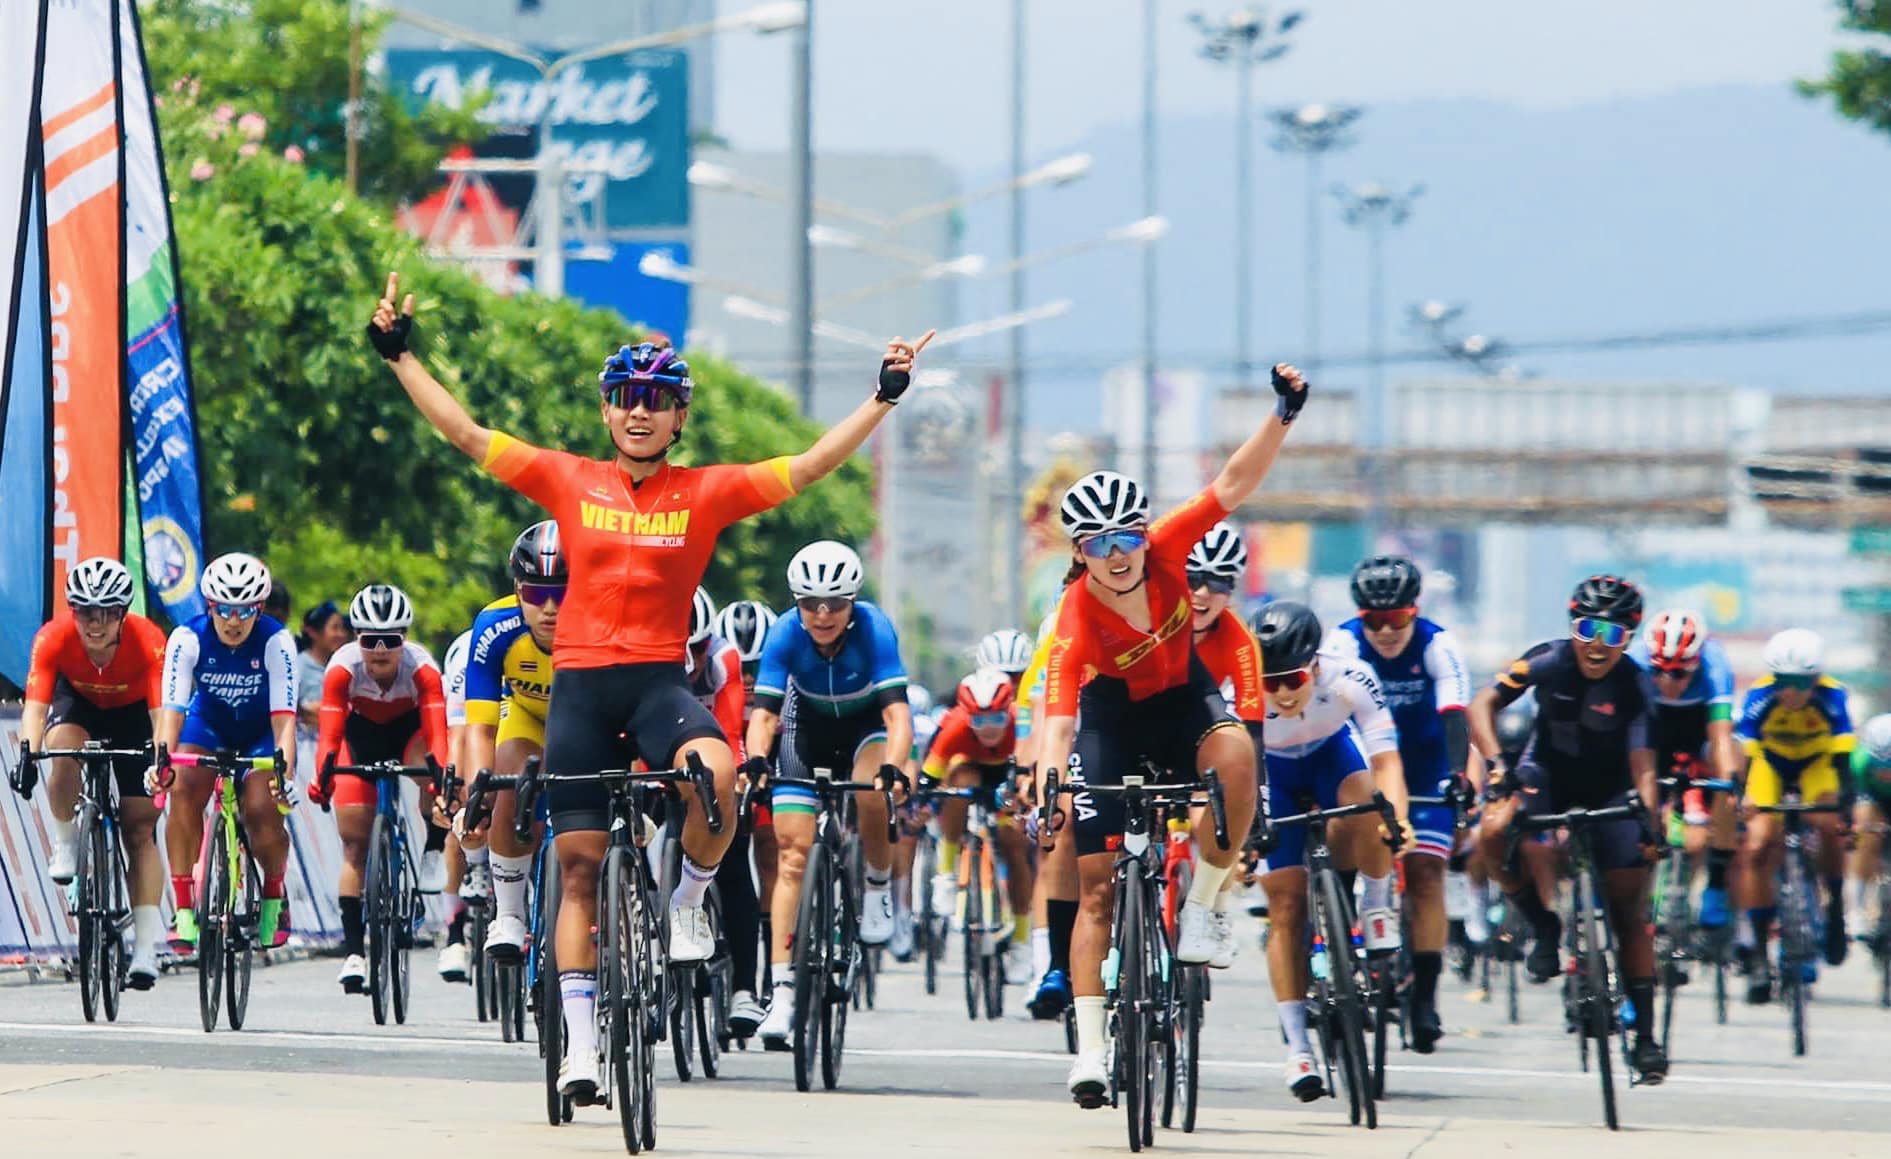 Danh sách đội tuyển xe đạp Việt Nam dự ASIAD 19: Nguyễn Thị Thật “tập dượt” cho Olympic 2024